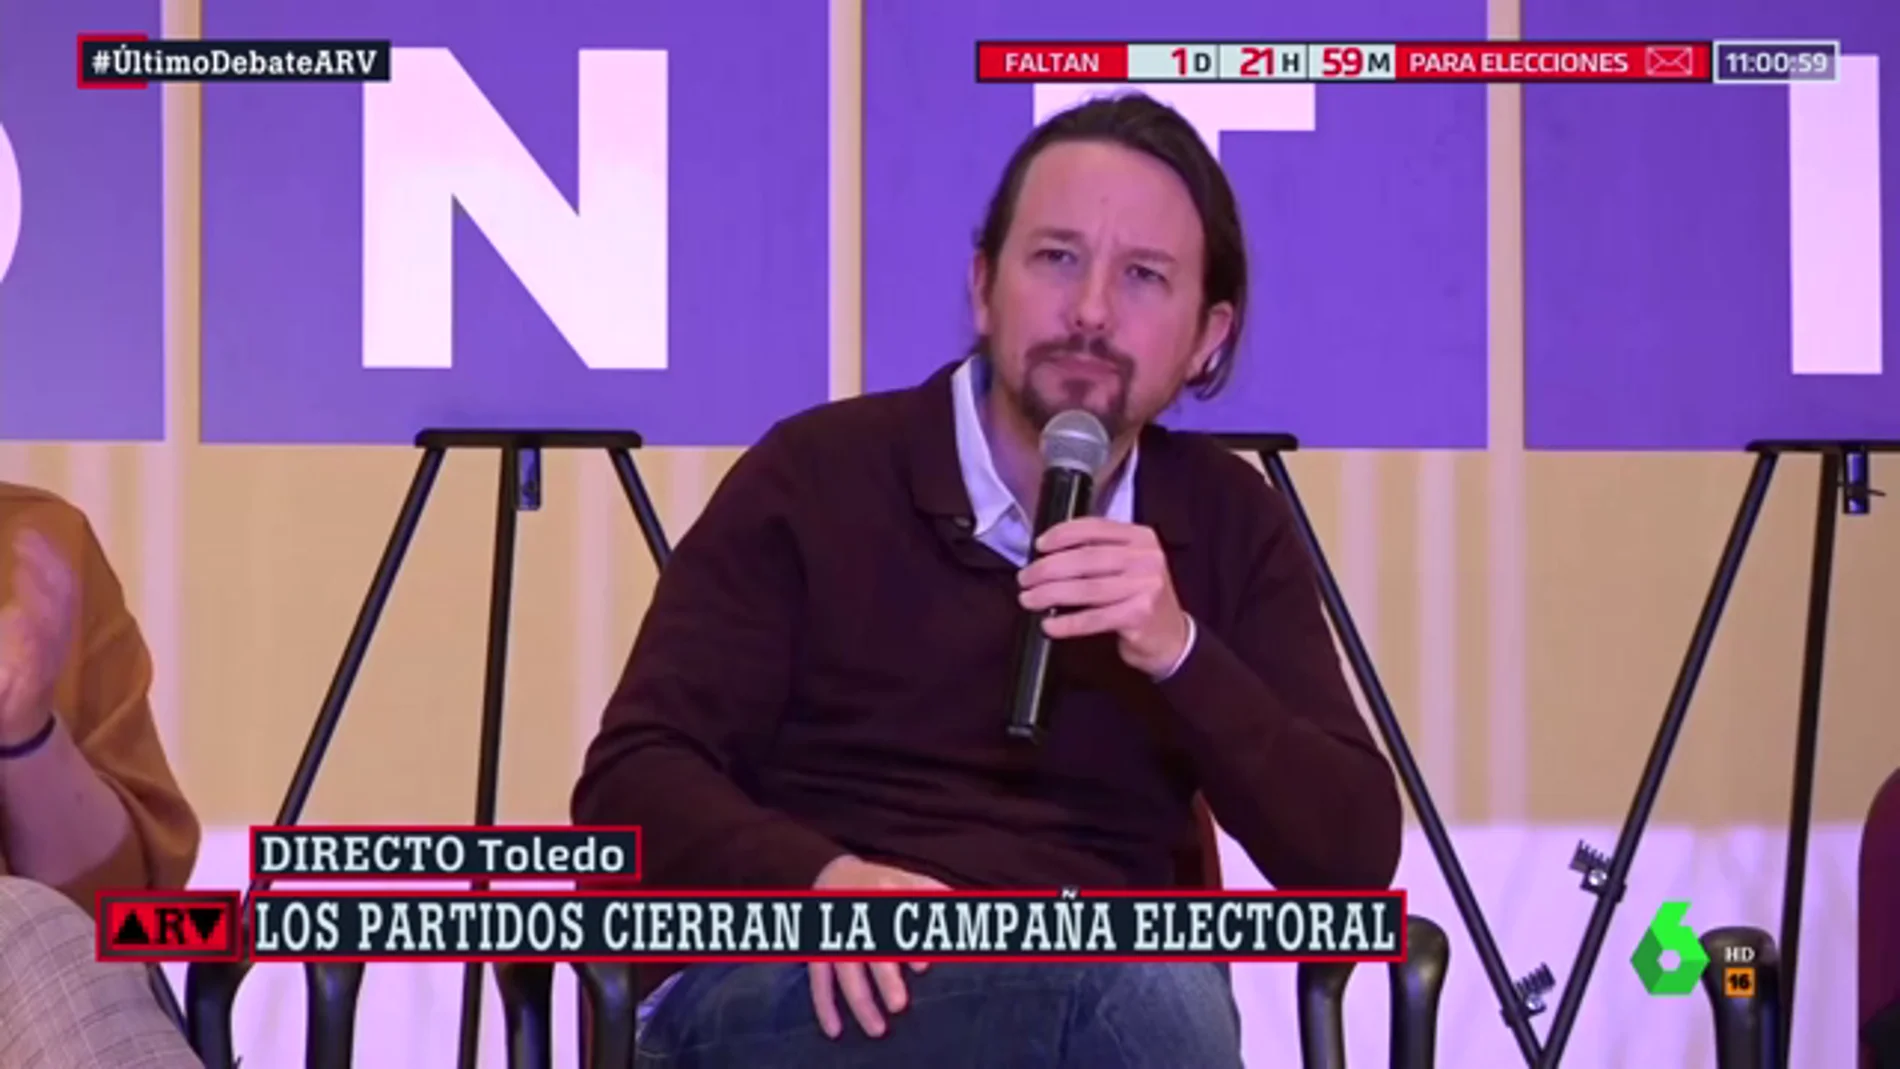 Iglesias carga contra Sánchez en el último día de campaña: "Usted mira a la derecha"